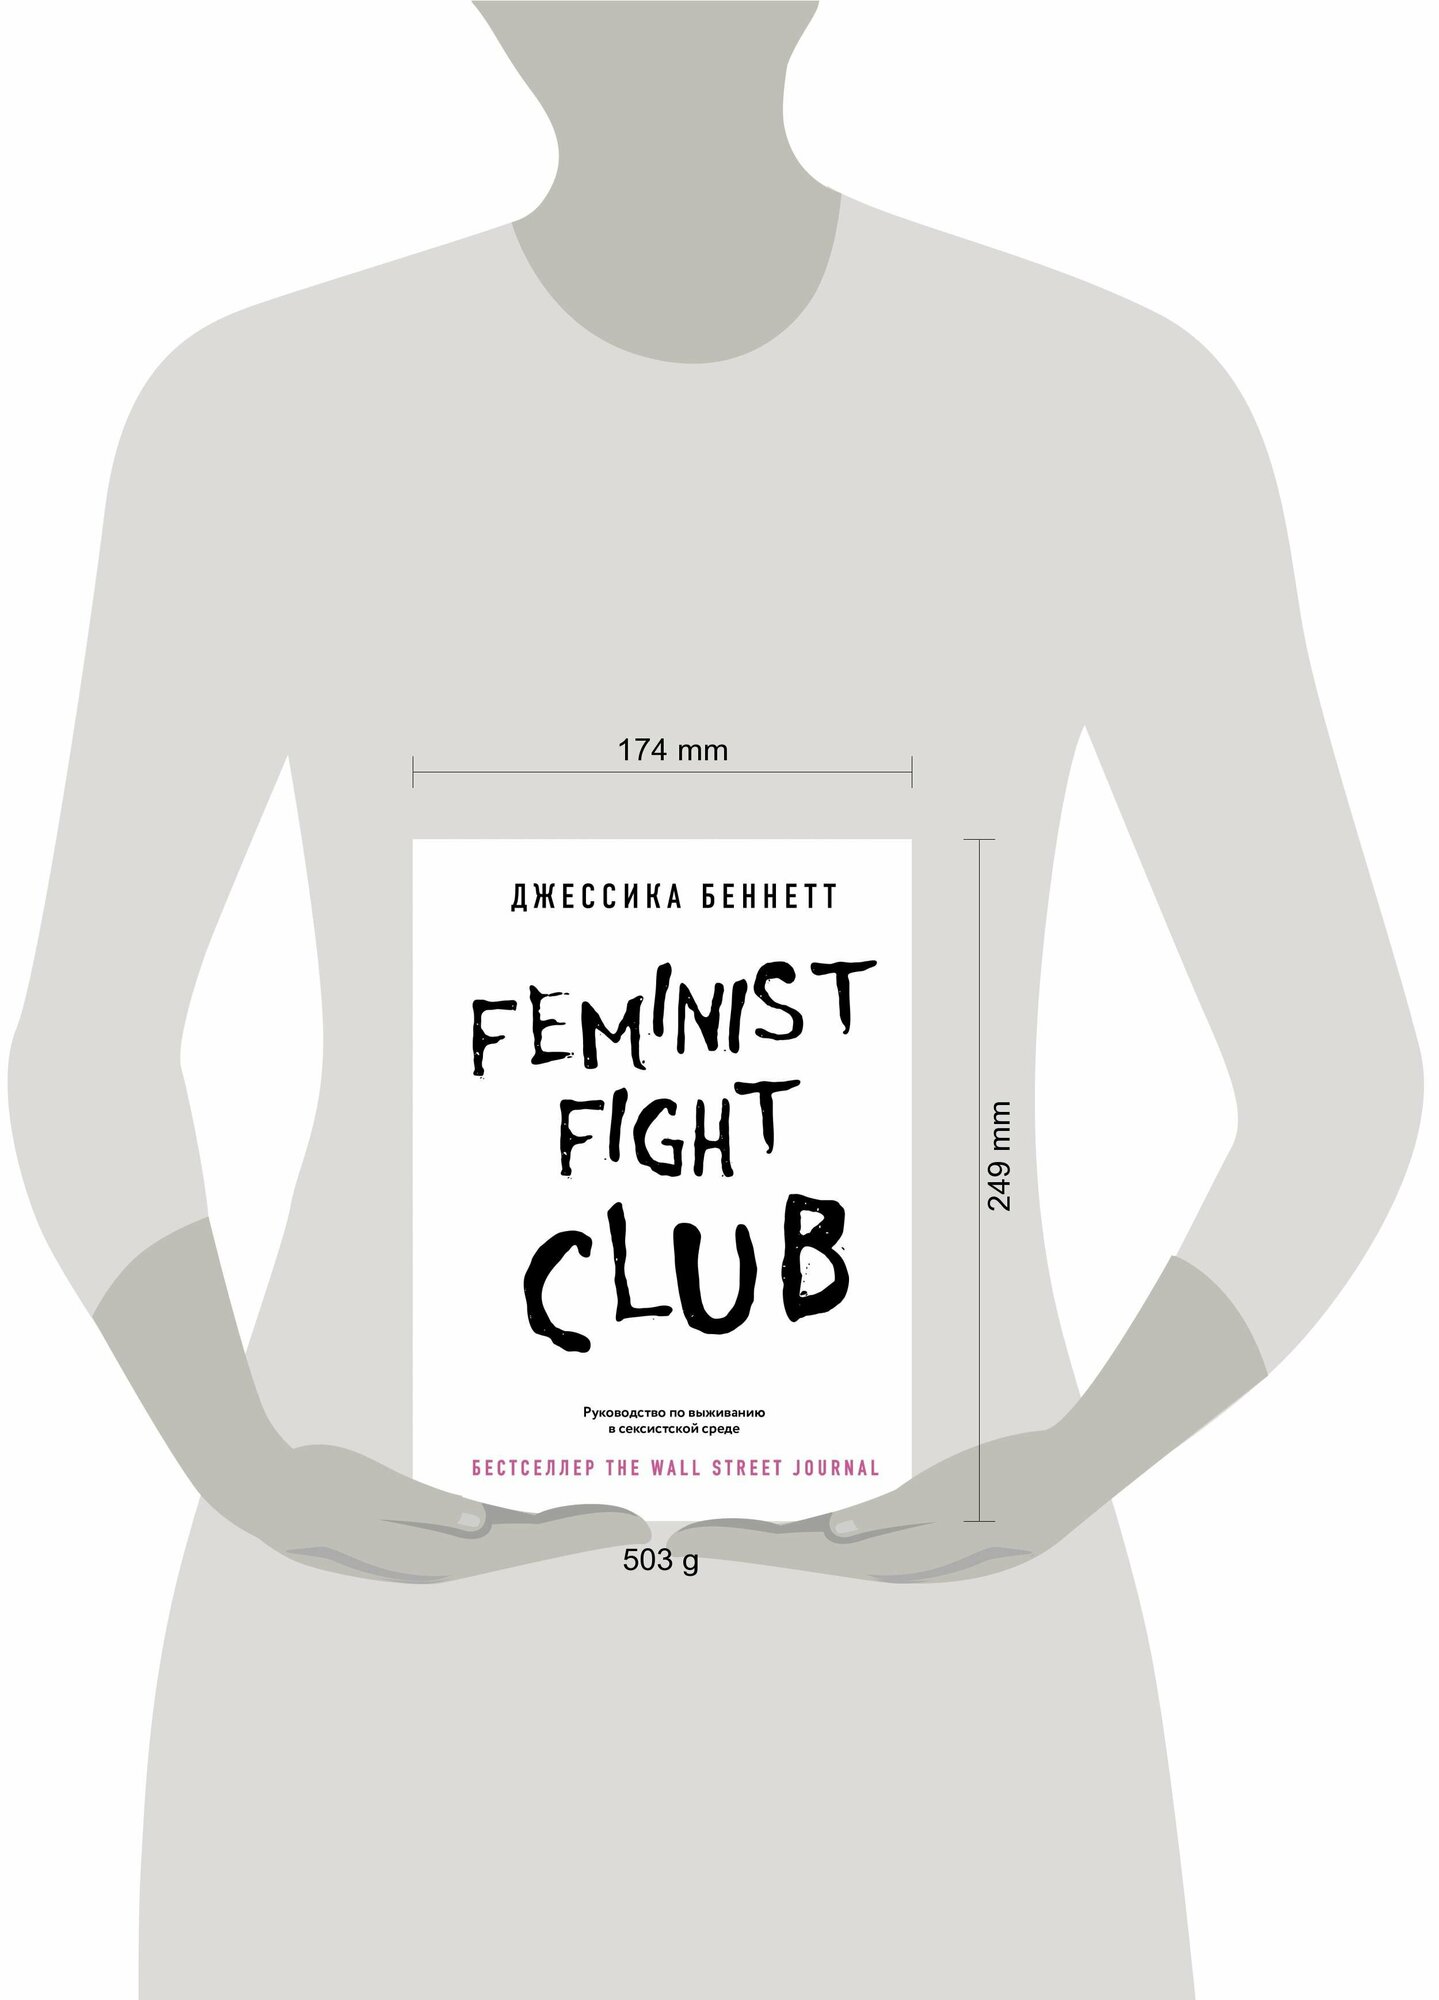 Feminist fight club. Руководство по выживанию в сексистской среде - фото №10